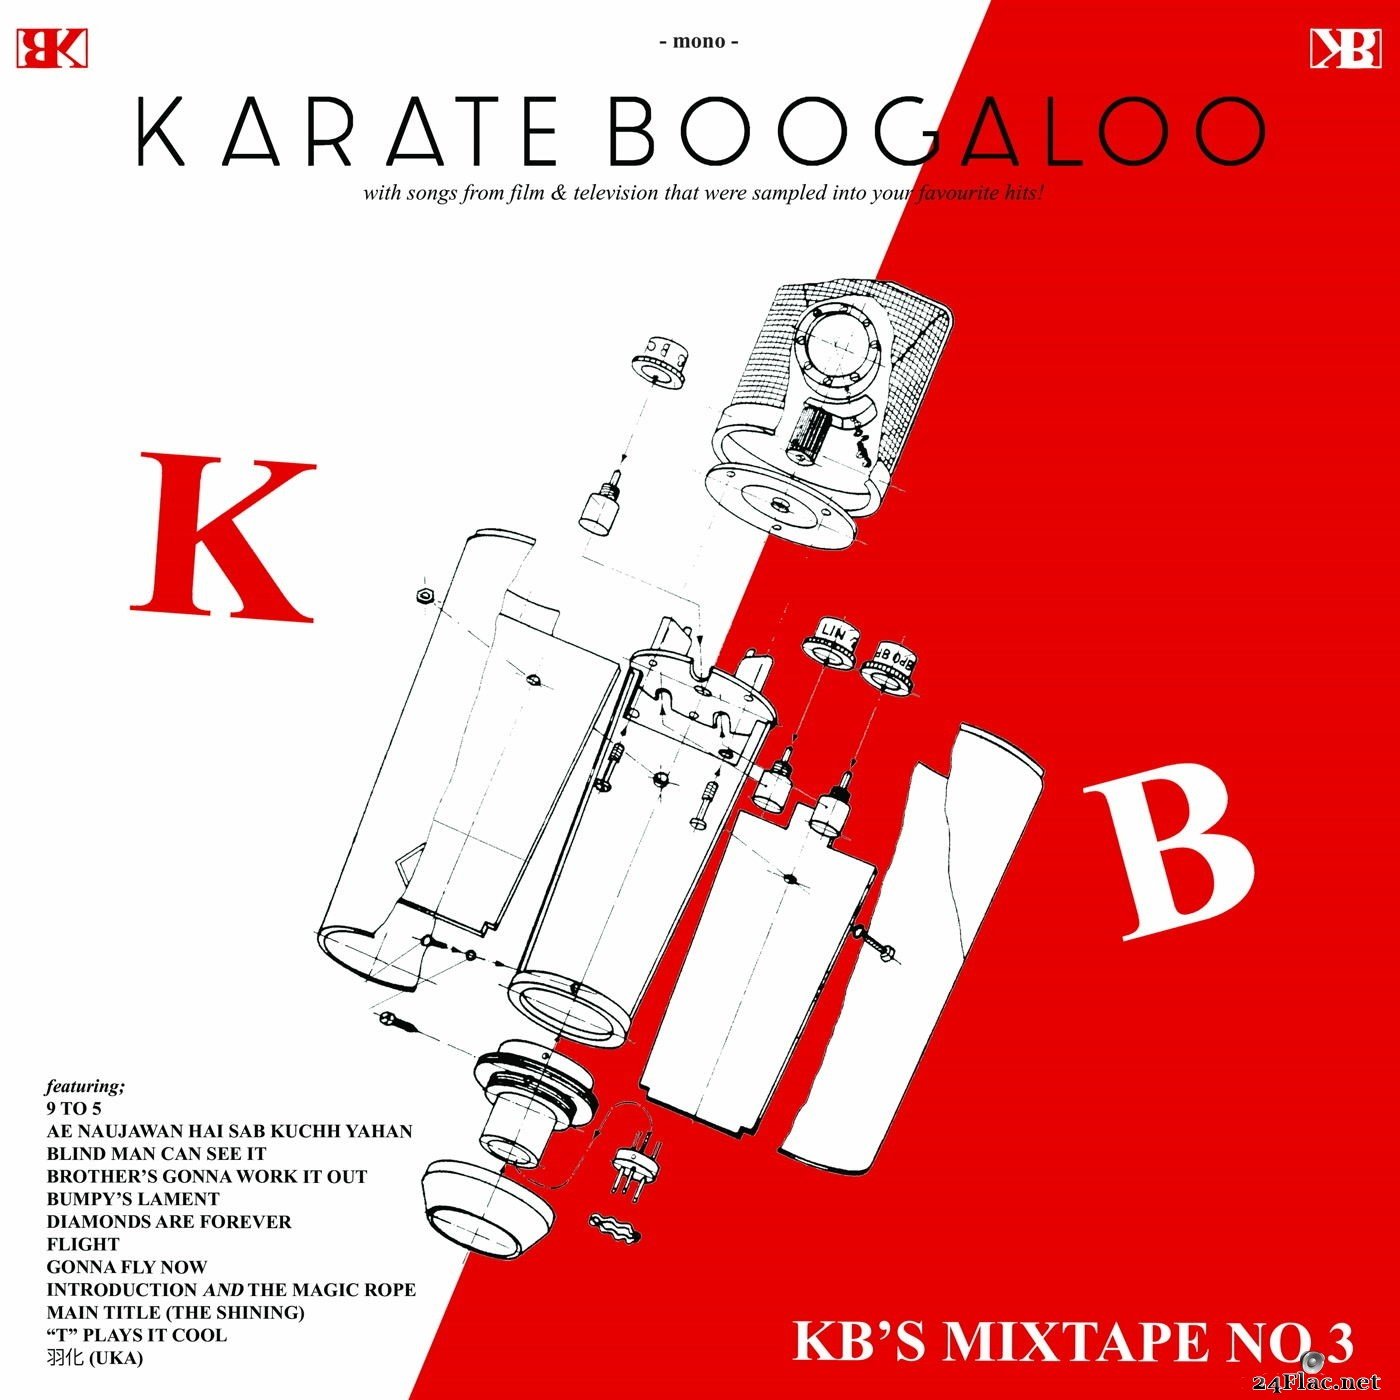 Karate Boogaloo - KB's Mixtape No. 3 (2021) Hi-Res